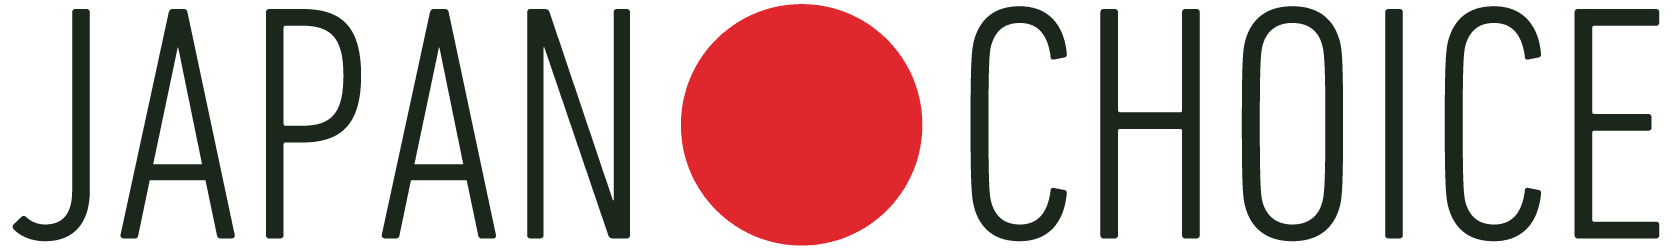 Japan Choice logo